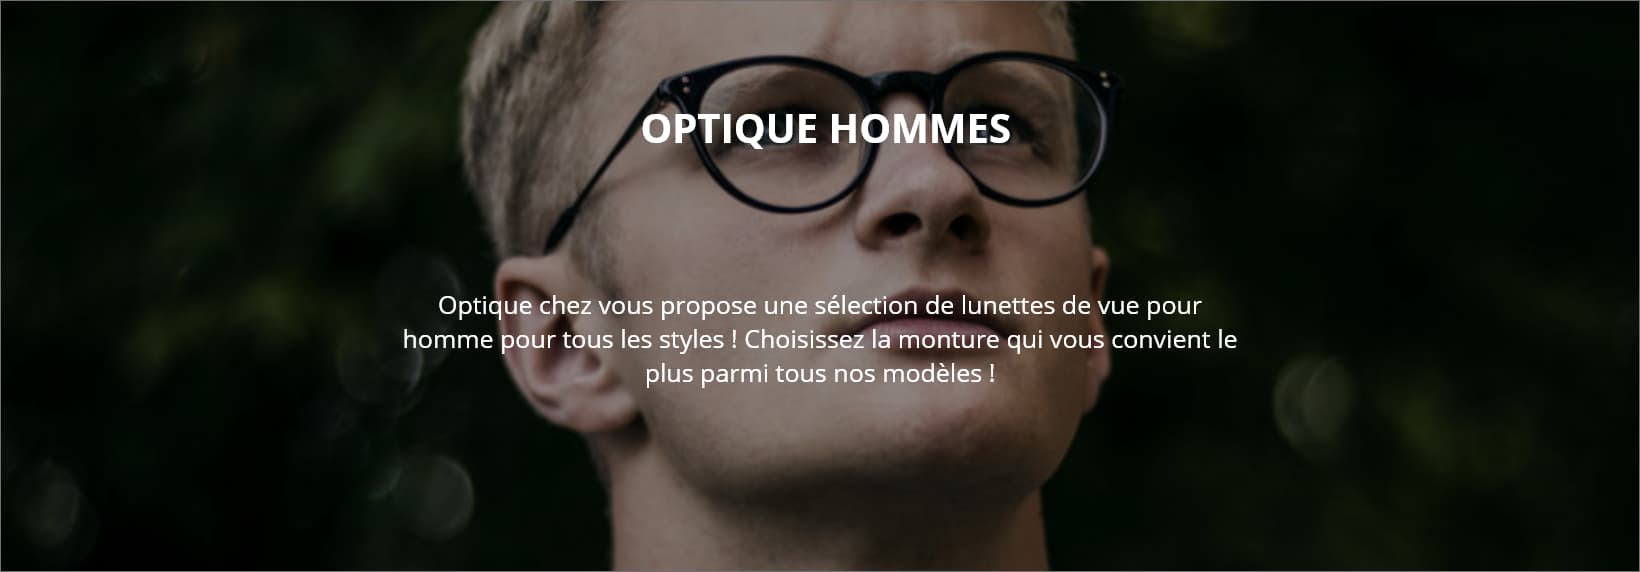 OPTIQUE HOMMES Optique chez vous propose une sélection de lunettes de vue pour homme pour tous les styles ! Choisissez la monture qui vous convient le plus parmi tous nos modèles !